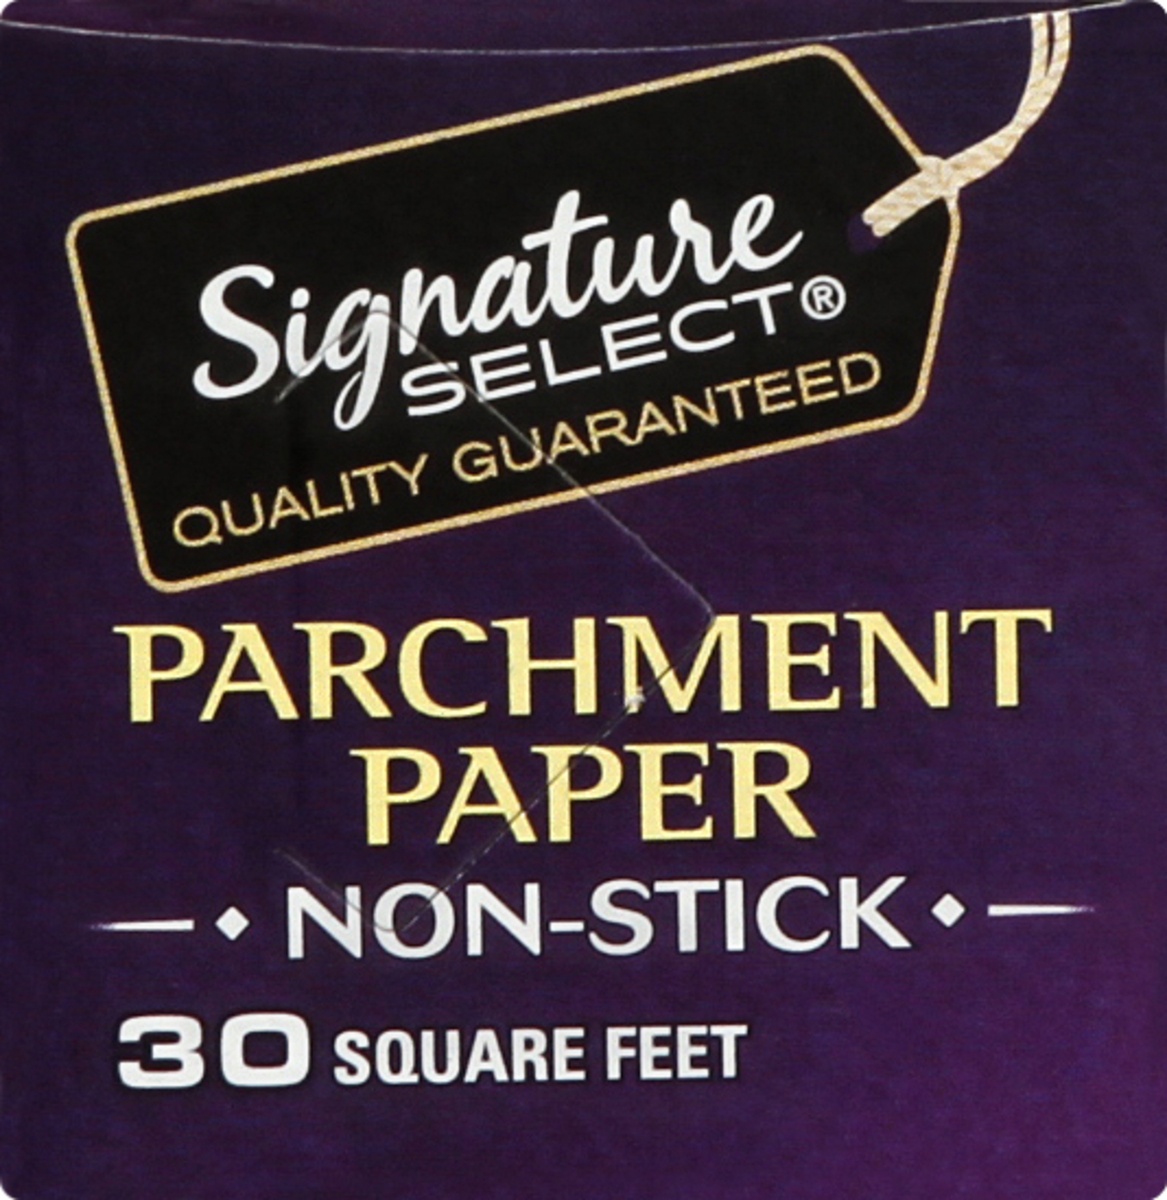 slide 7 of 9, Signature SELECT Paper Parchment Non Stick 30 Sq. Ft. - Each, 1 ct